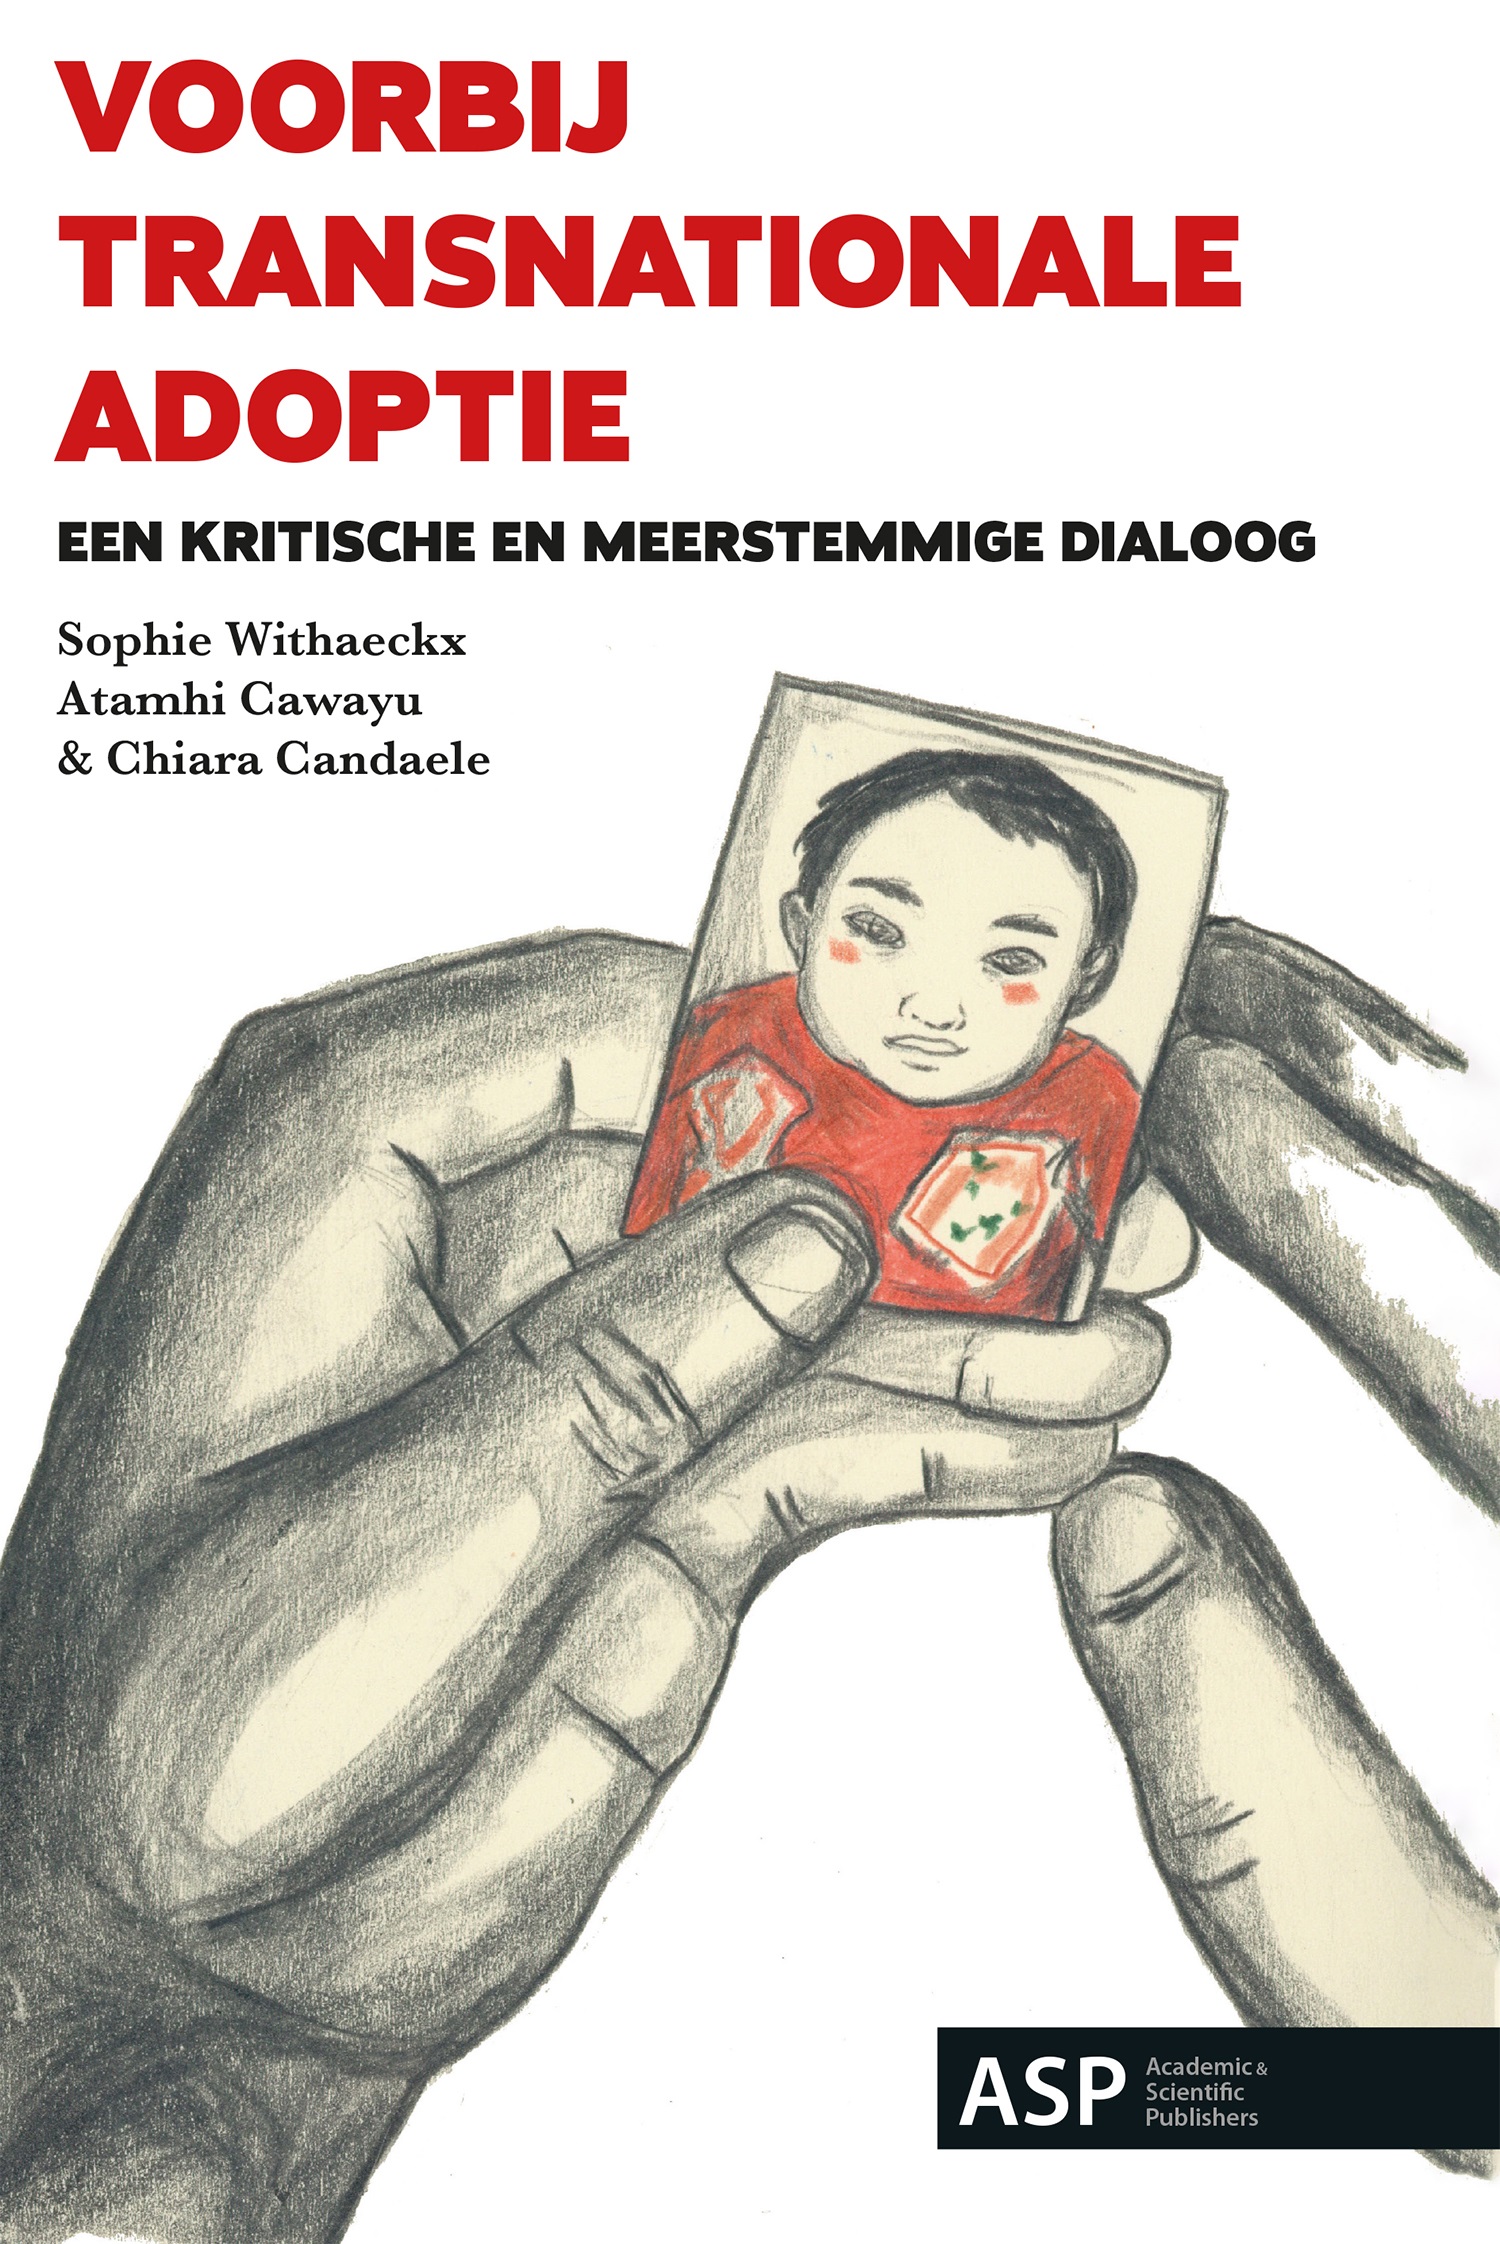 Voorbij transnationale adoptie